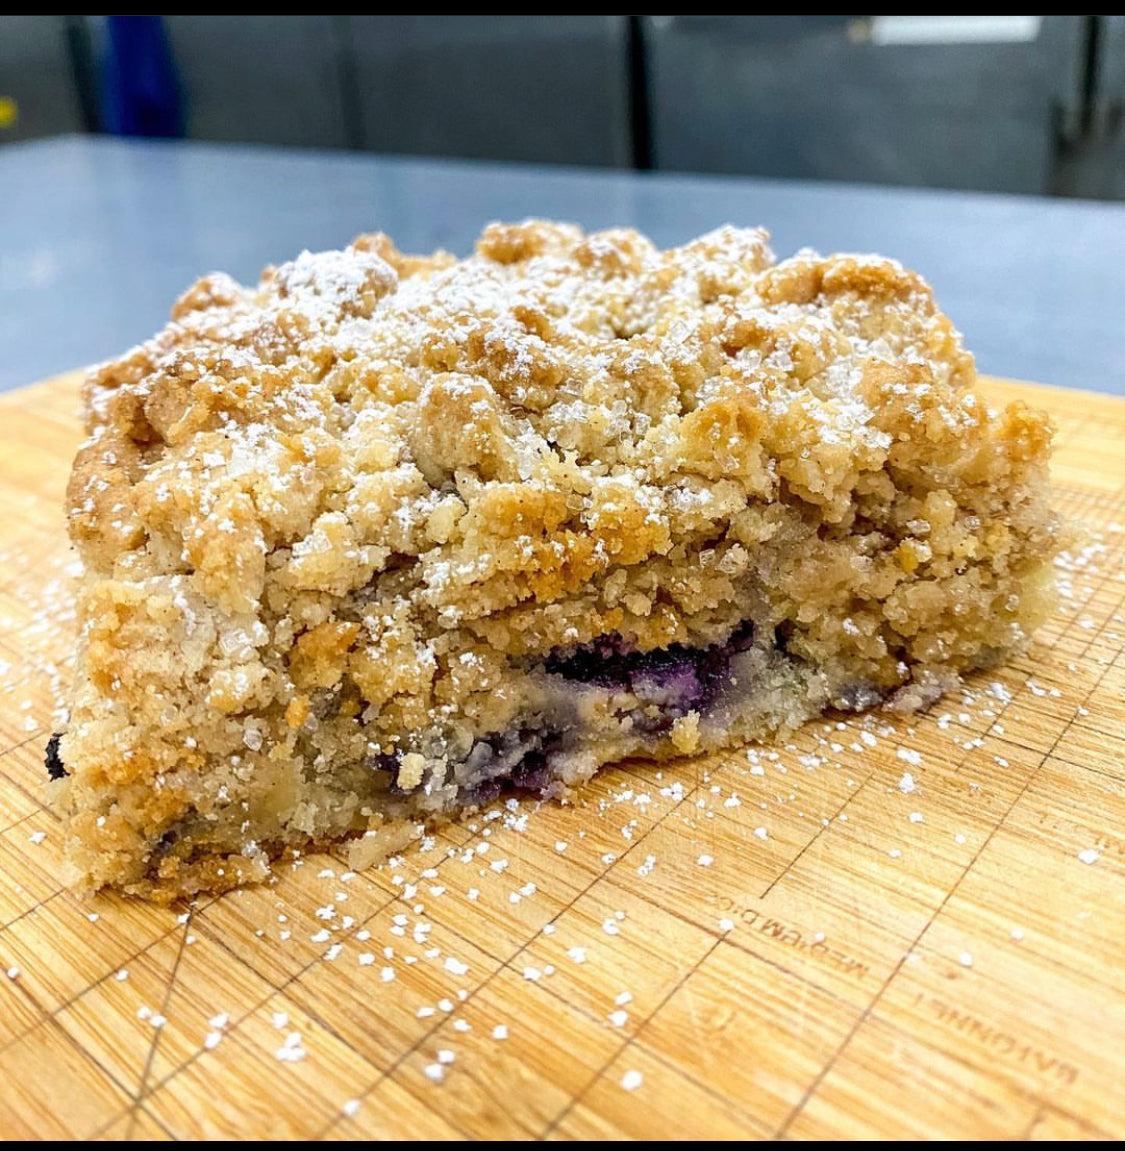 NJ Style Crumb Cake (Blueberry)